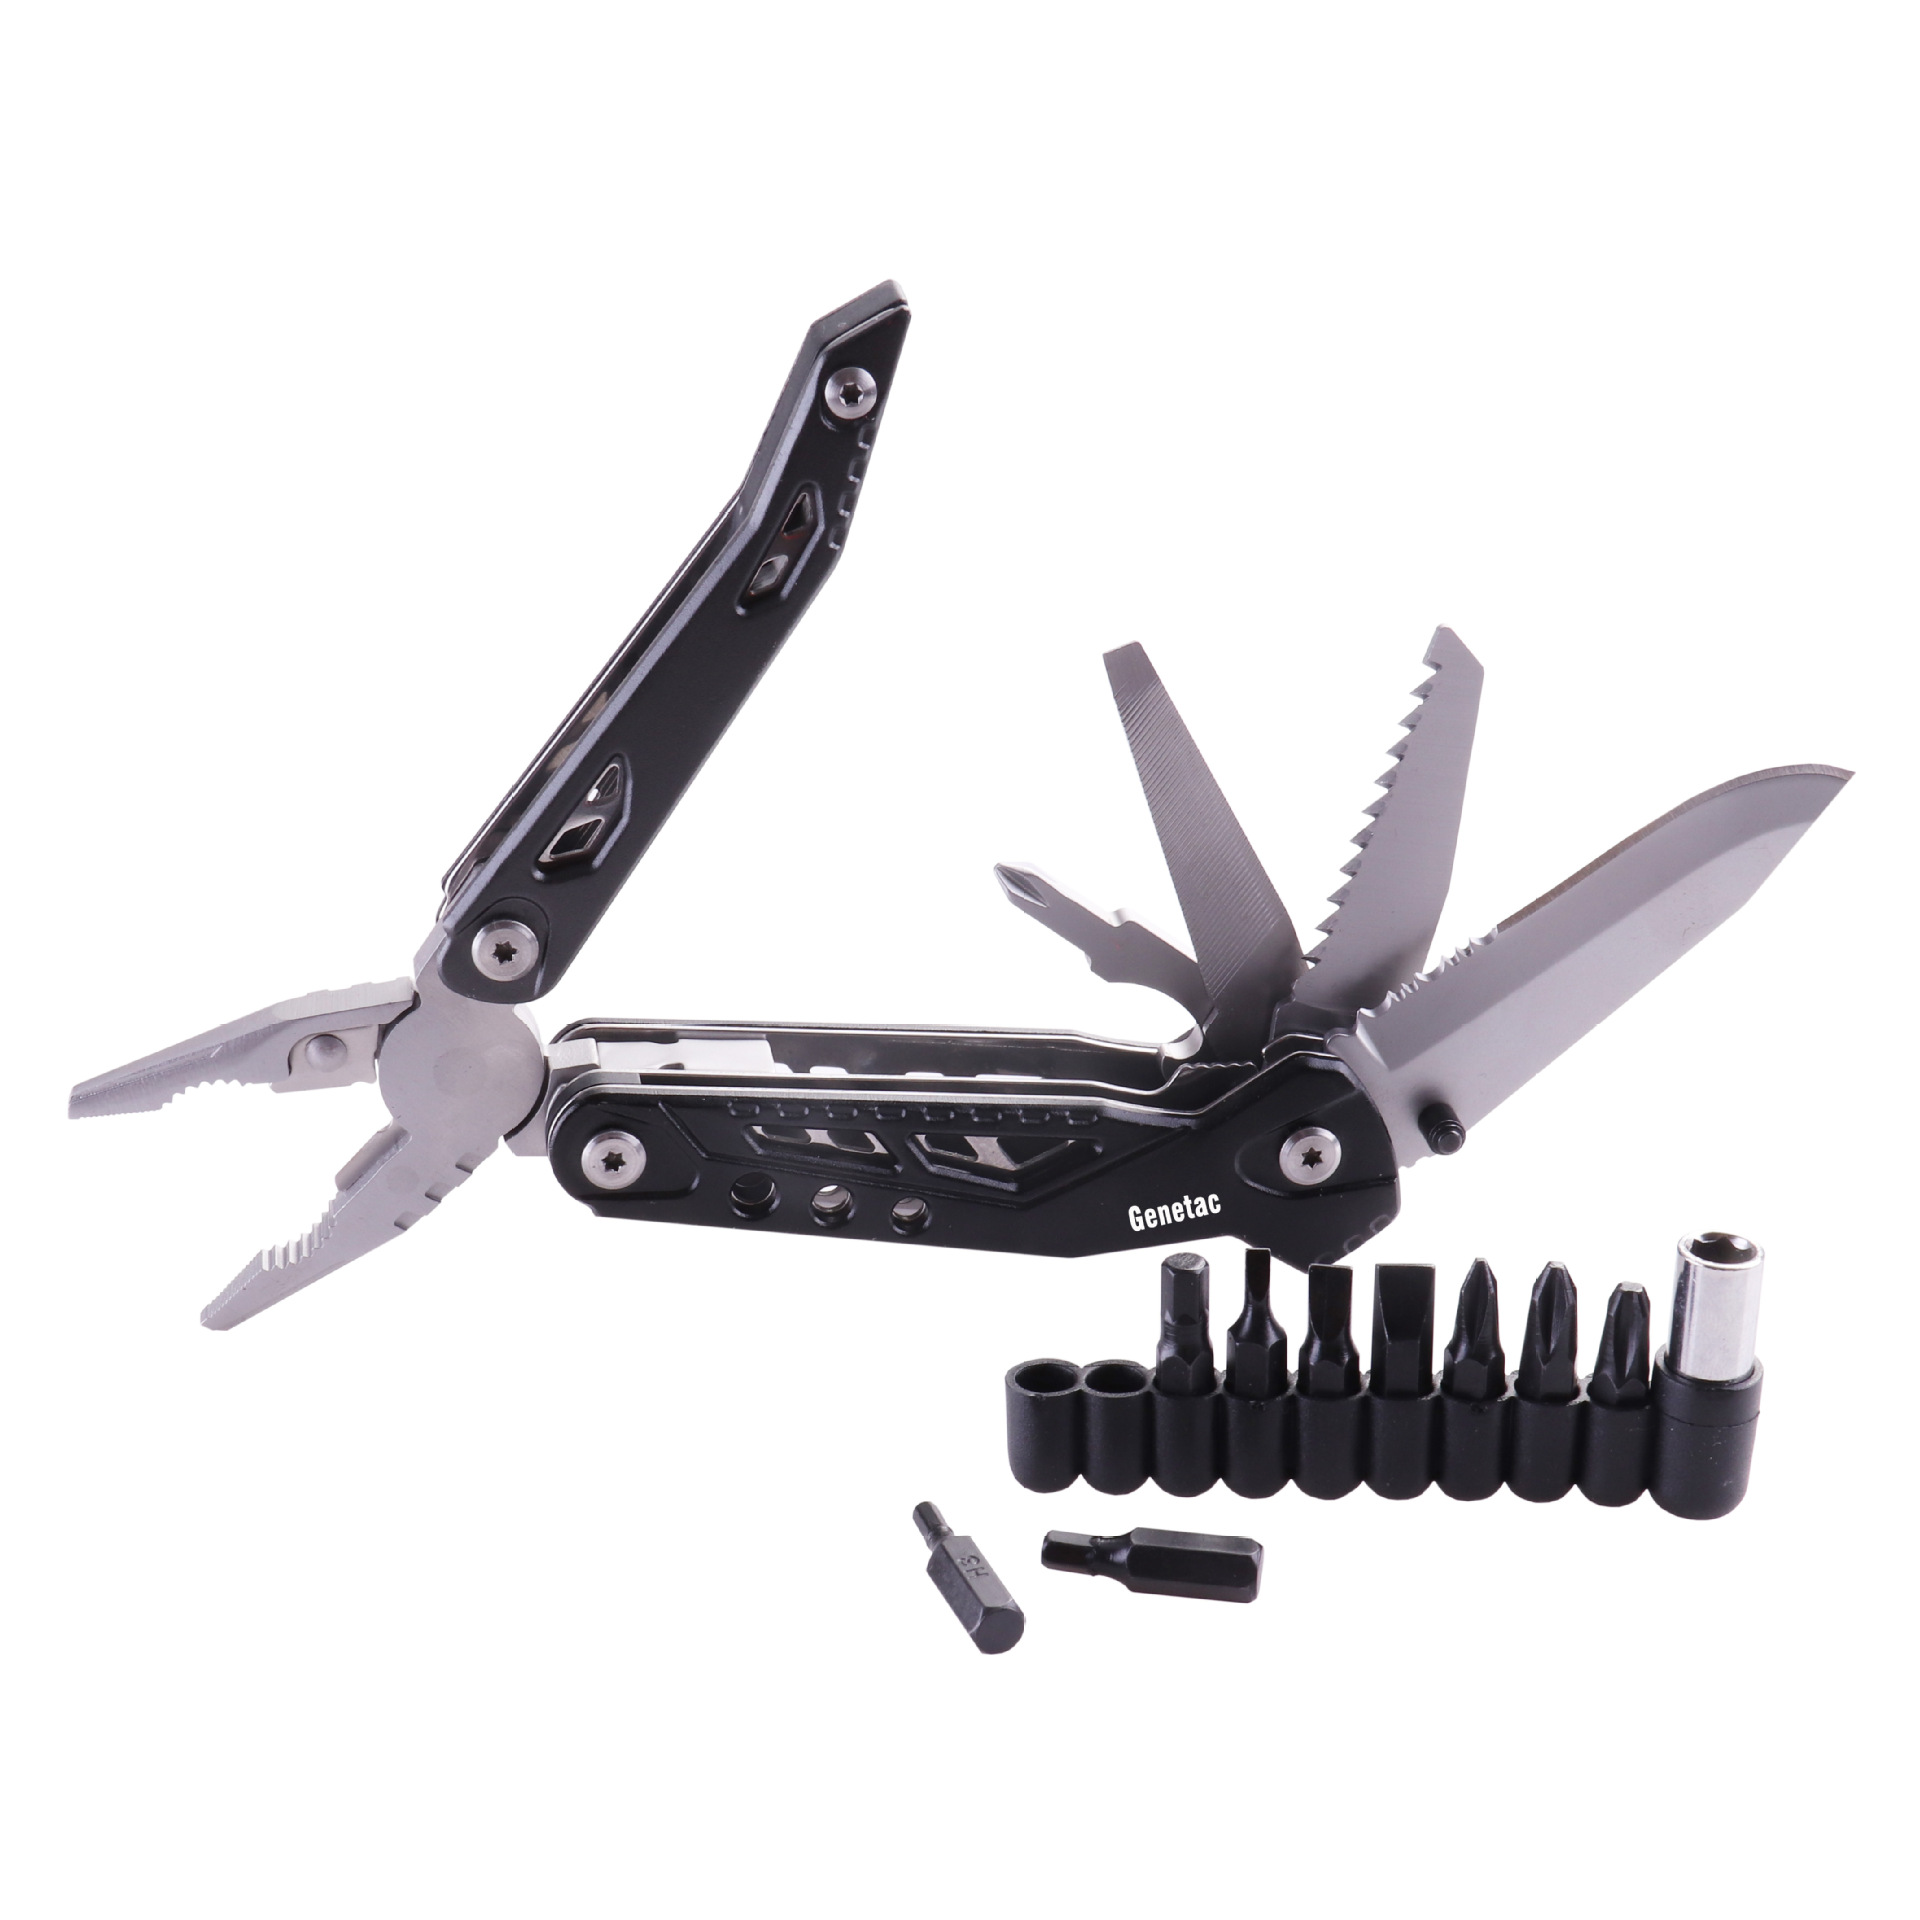 034-A-9-IN-1-MultiFunctional-Tools-Bicycle-Repair-Tool-Field-Survival-Repair-Knife-1559148-3